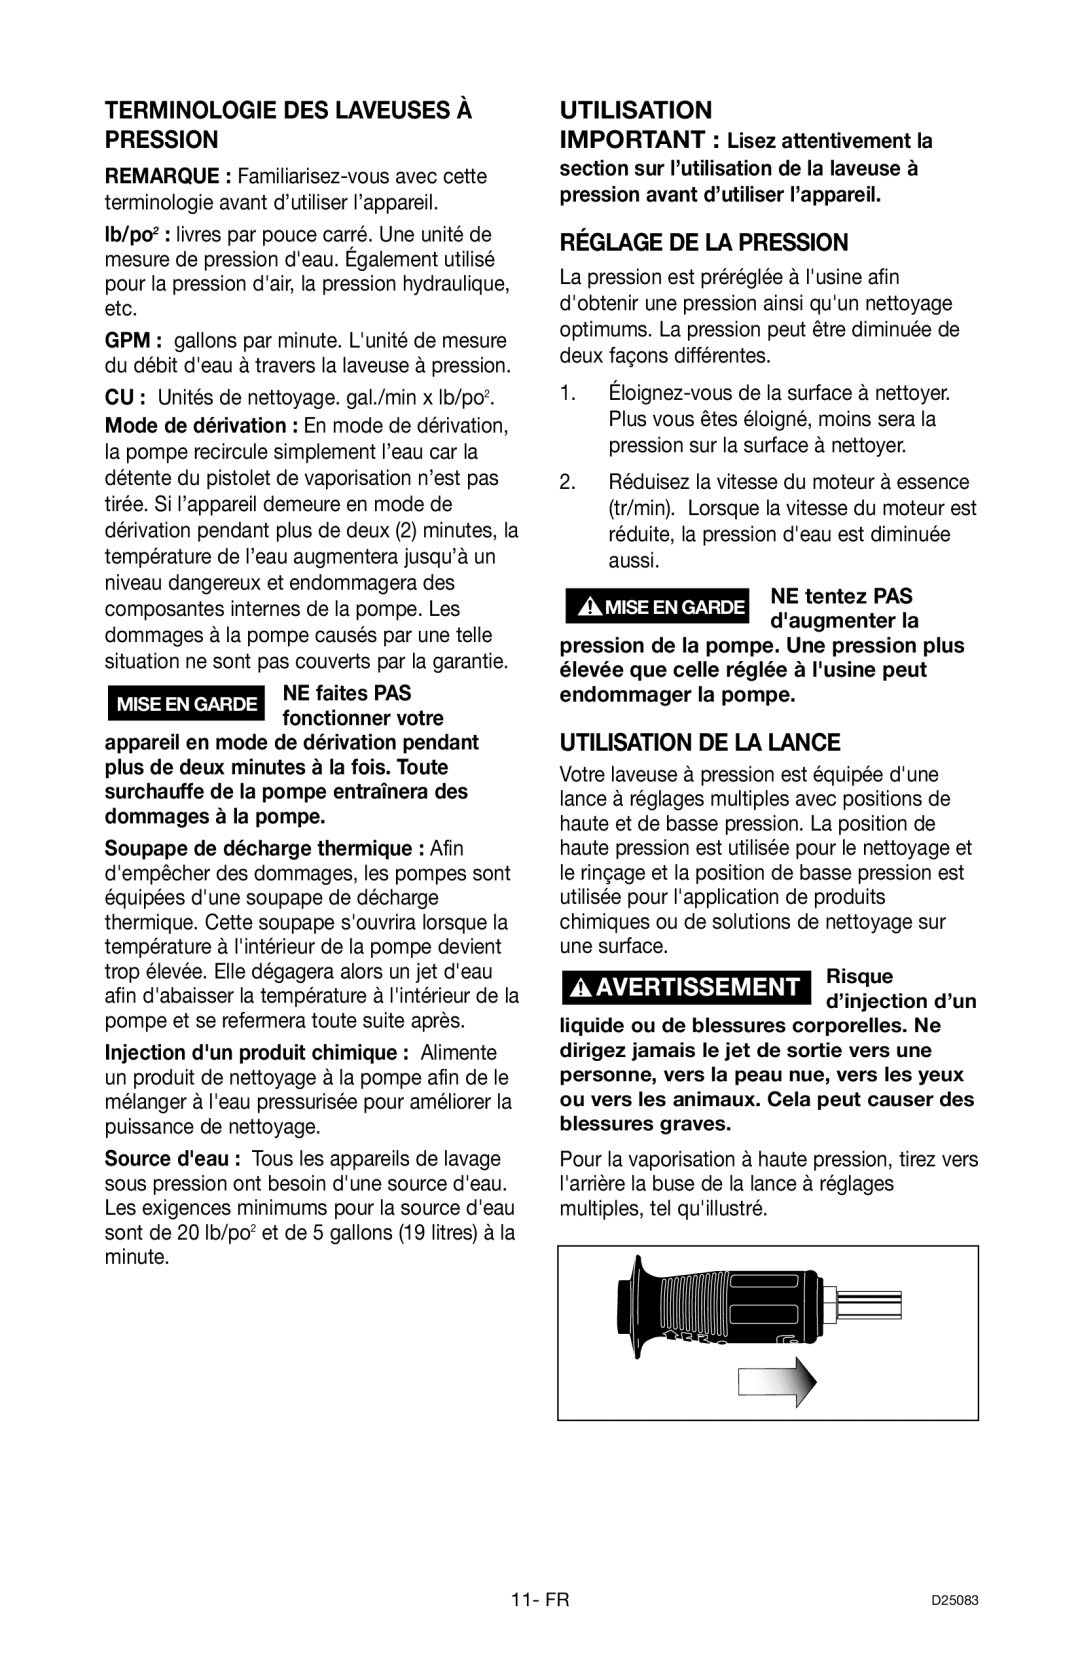 Craftsman D25083, 919.672240 Terminologie Des Laveuses À Pression, Réglage De La Pression, Utilisation De La Lance 